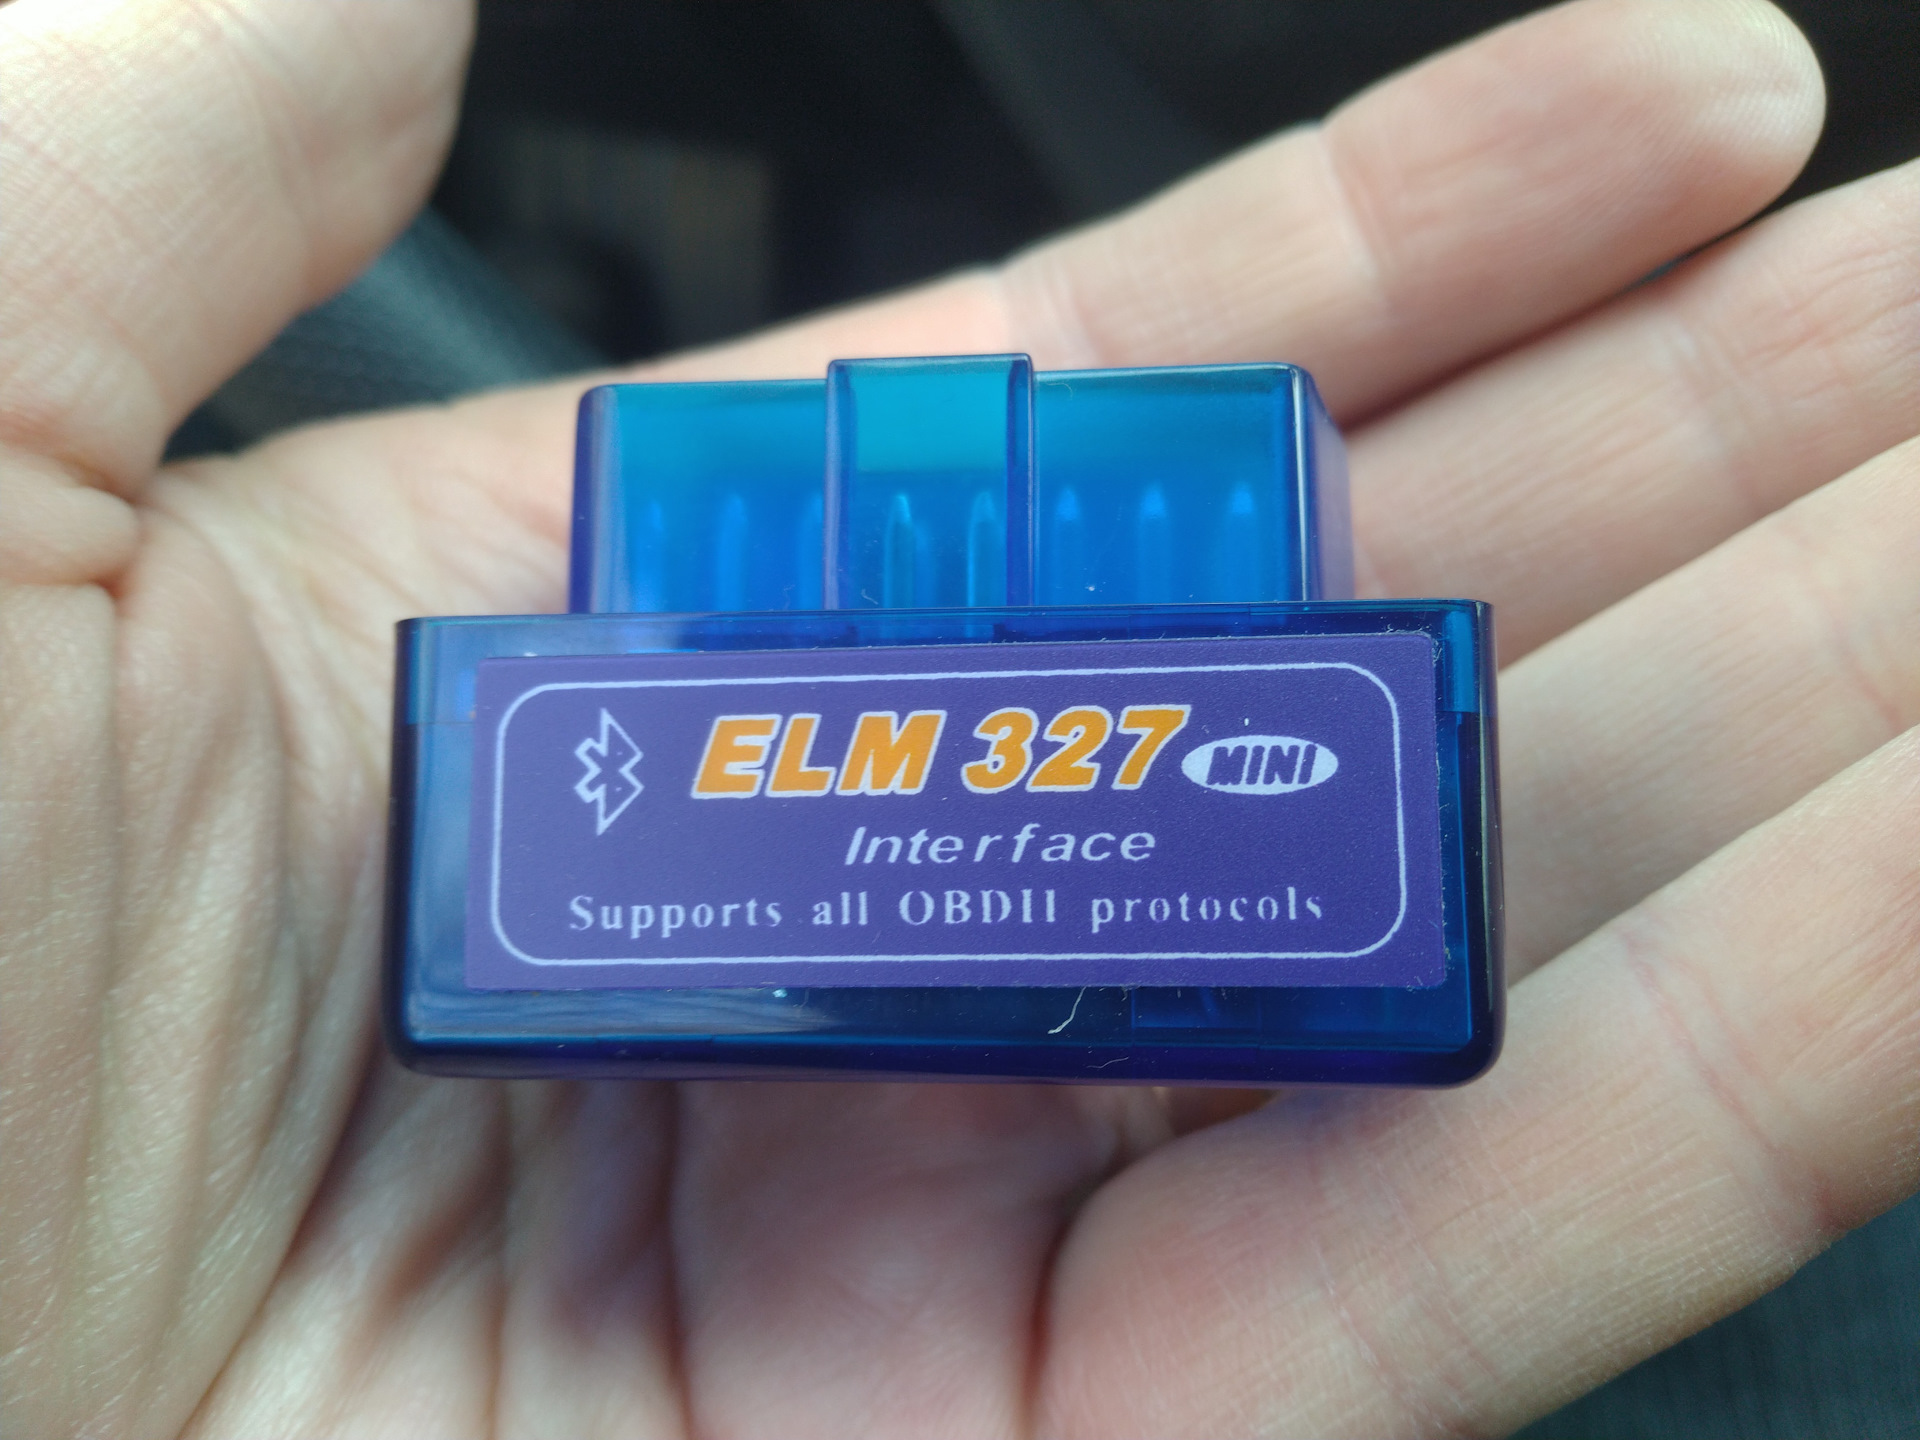 Елм версия 1.5 купить. Сканер елм 327. Elm 327 Bluetooth Micro New v1.5. Елм 327 версия 1.5. Купить Elm 327 версии 1.5.